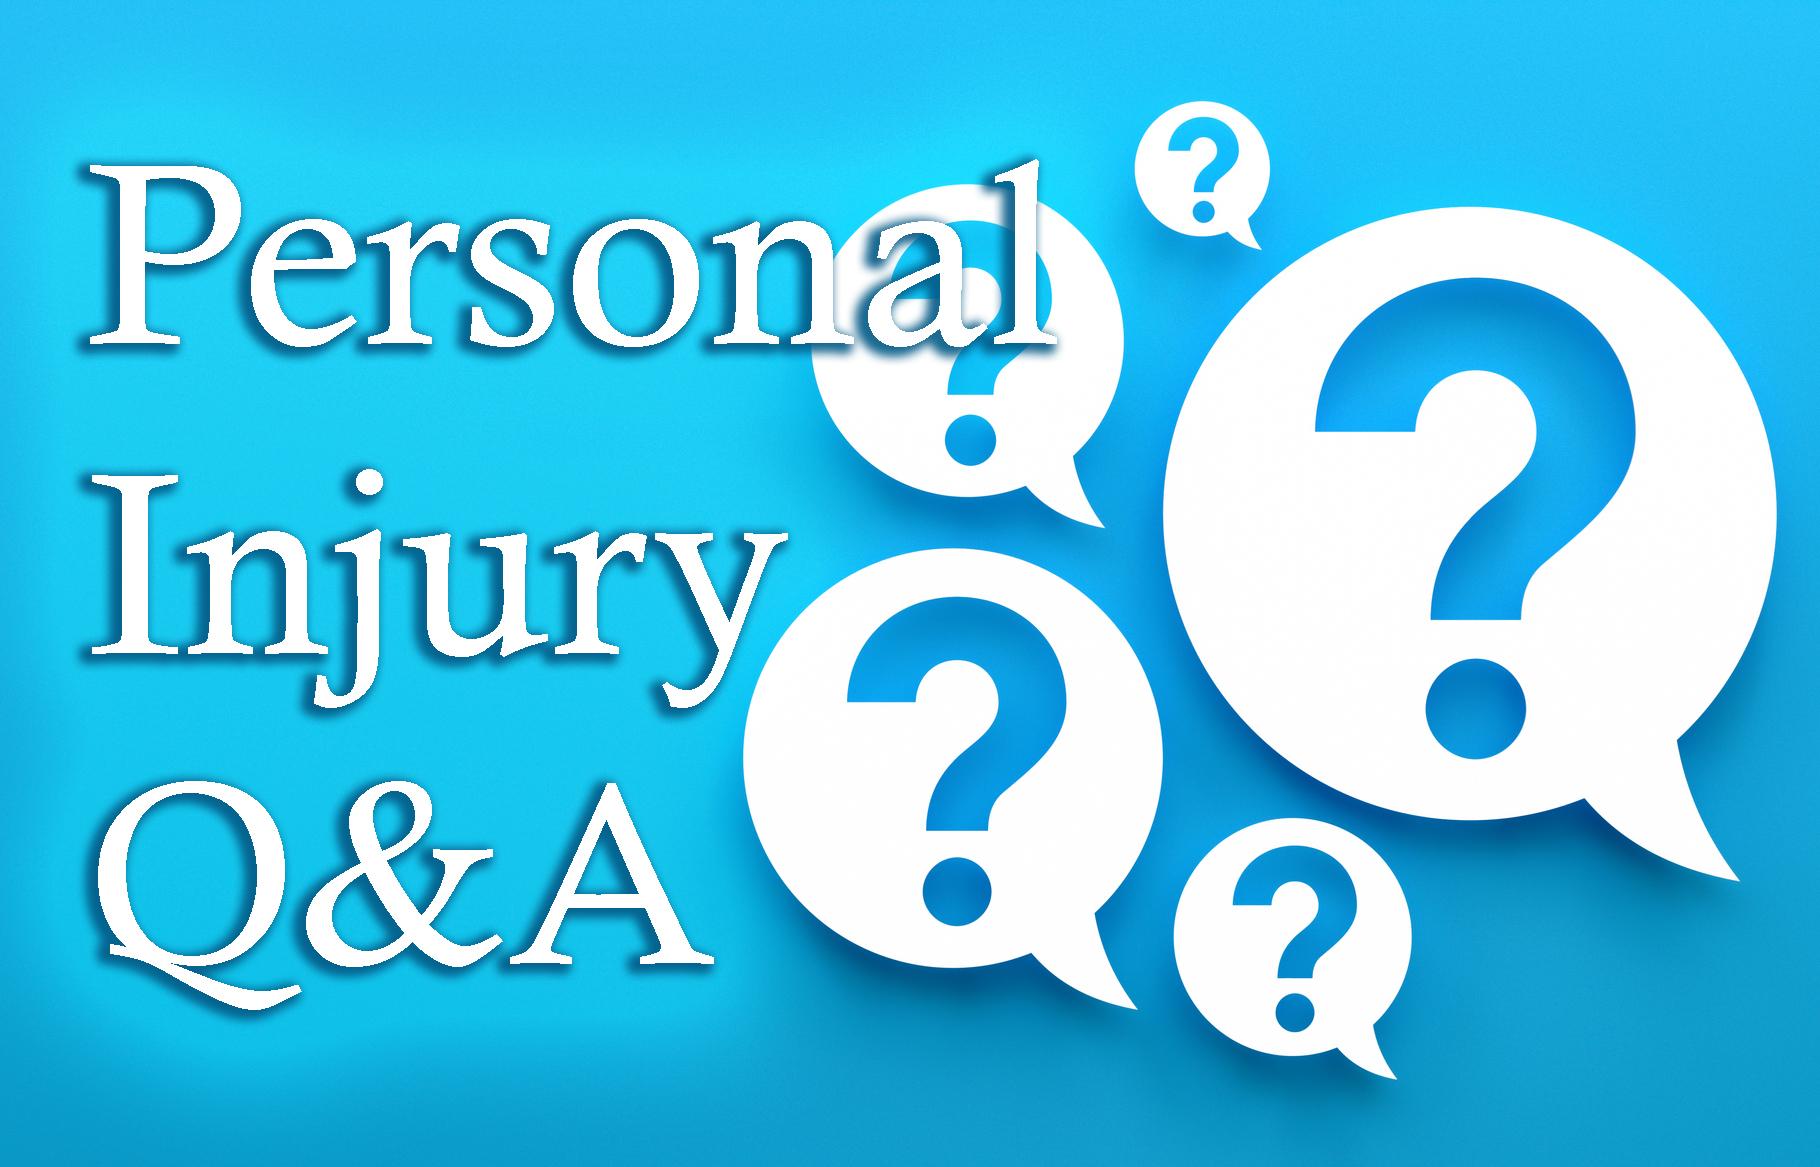 Personal Injury Claim FAQ